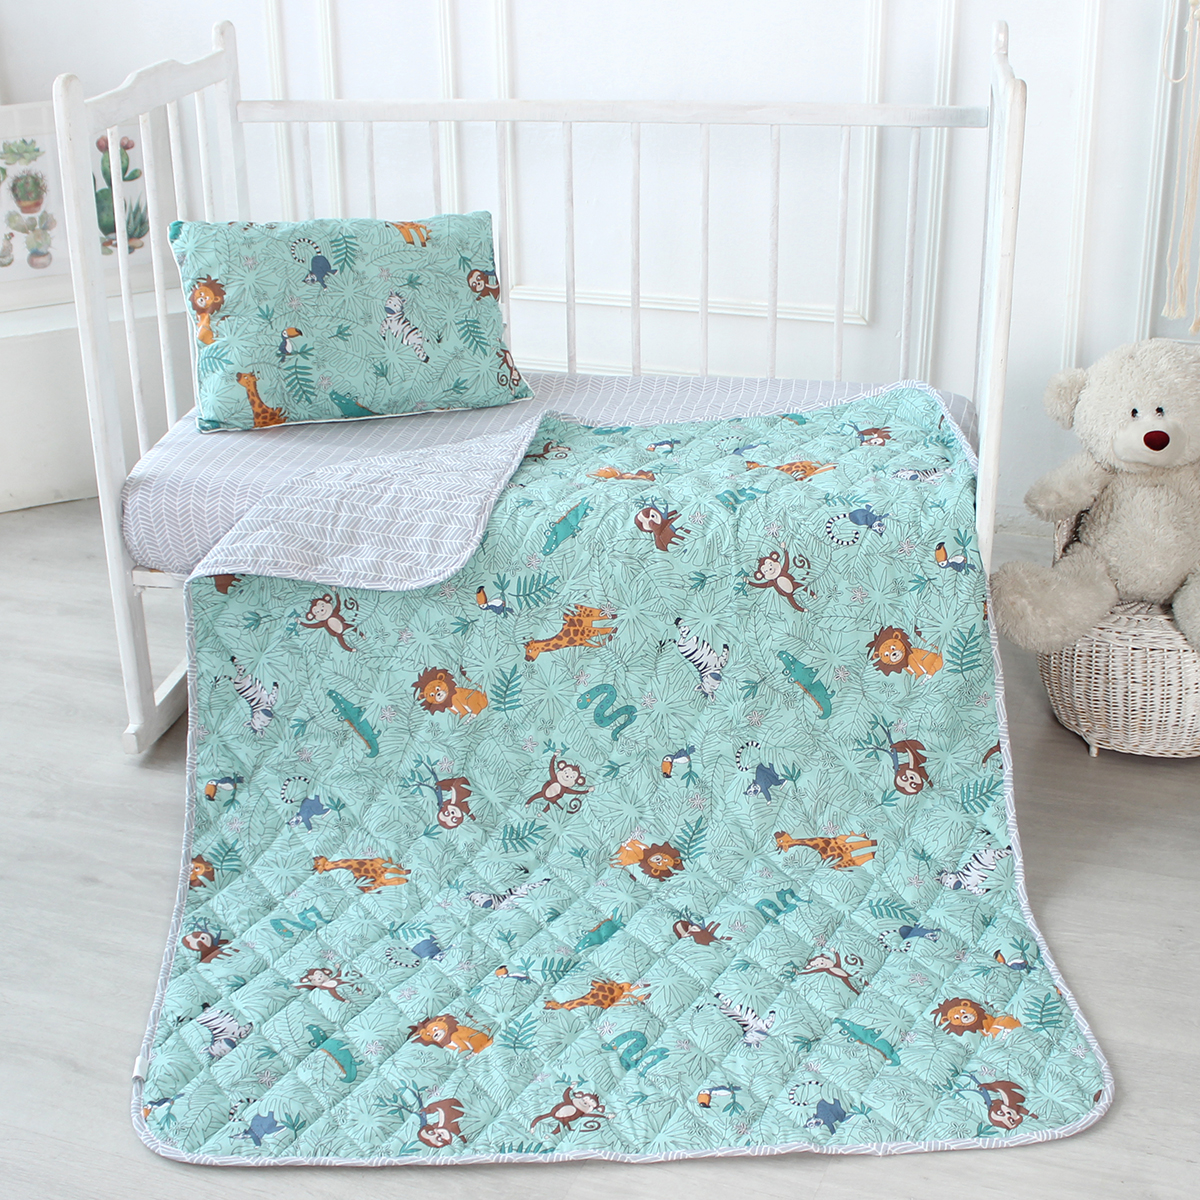 Детское одеяло Сафари легкое цвет: мятный (110х140 см), размер 110х140 см